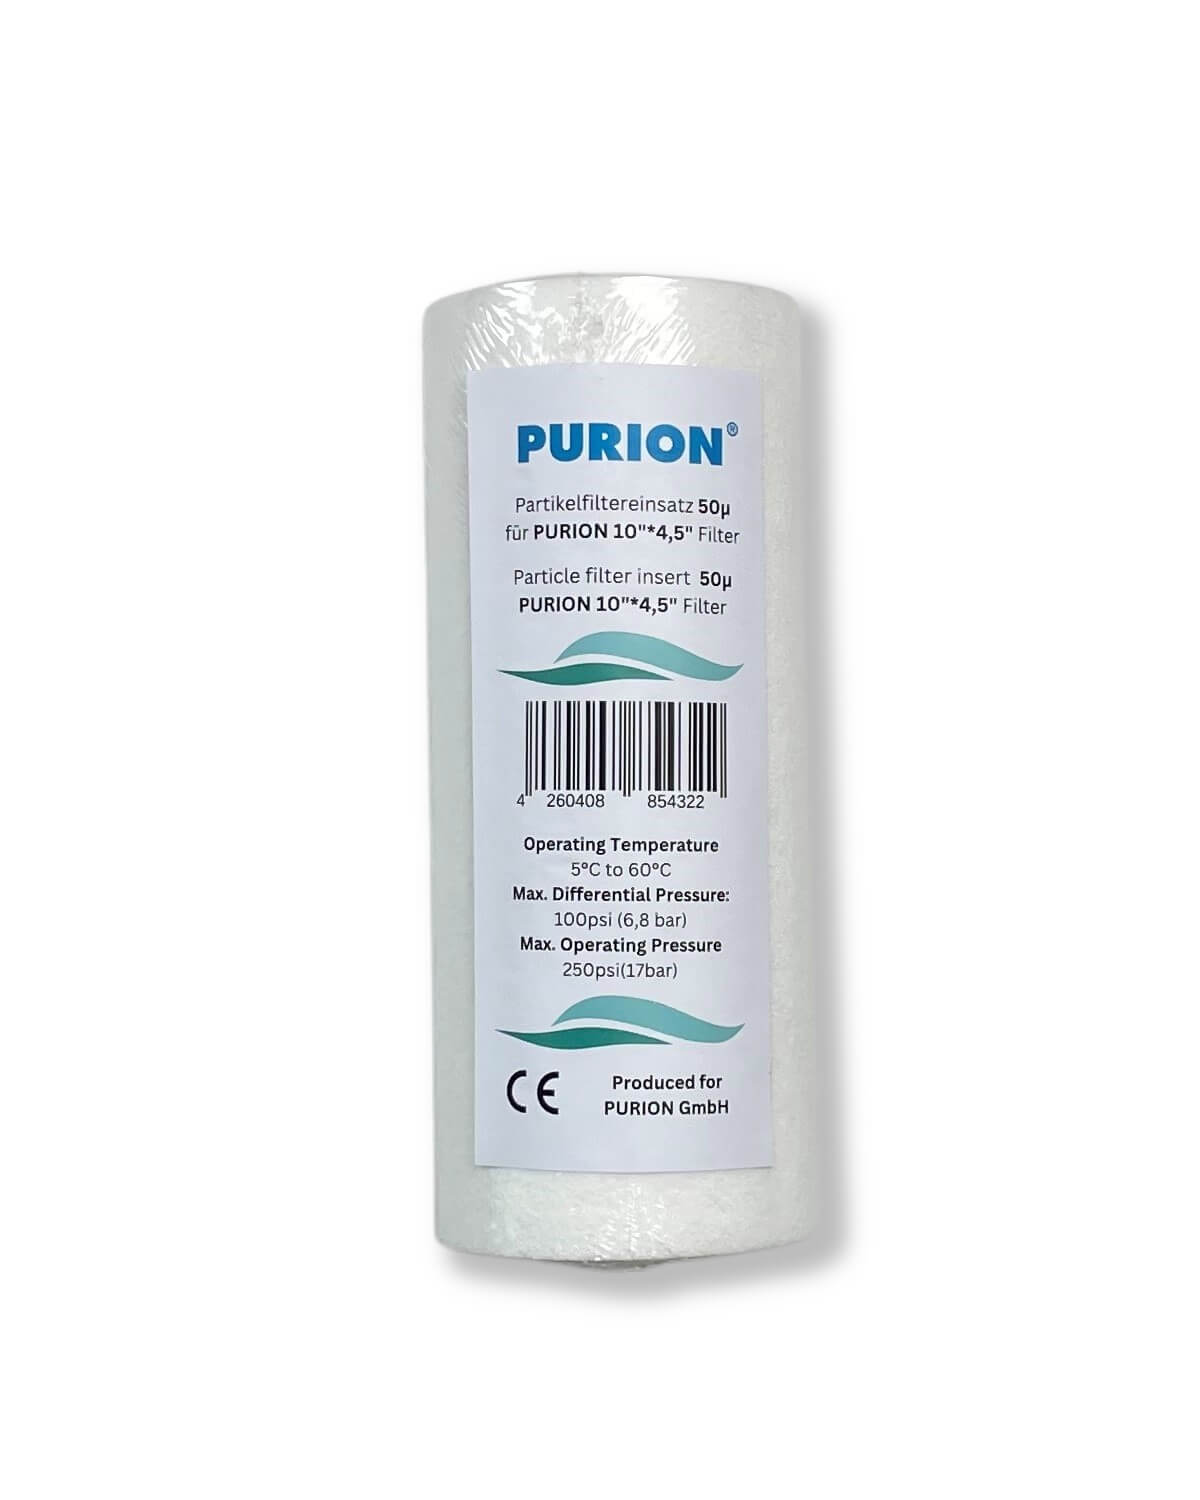 Die PURION doppelter Big Blue Vorfilter Hygienetücher der PURION GmbH für den Wasseraufbereitung- und Wasserreinigungsbedarf.